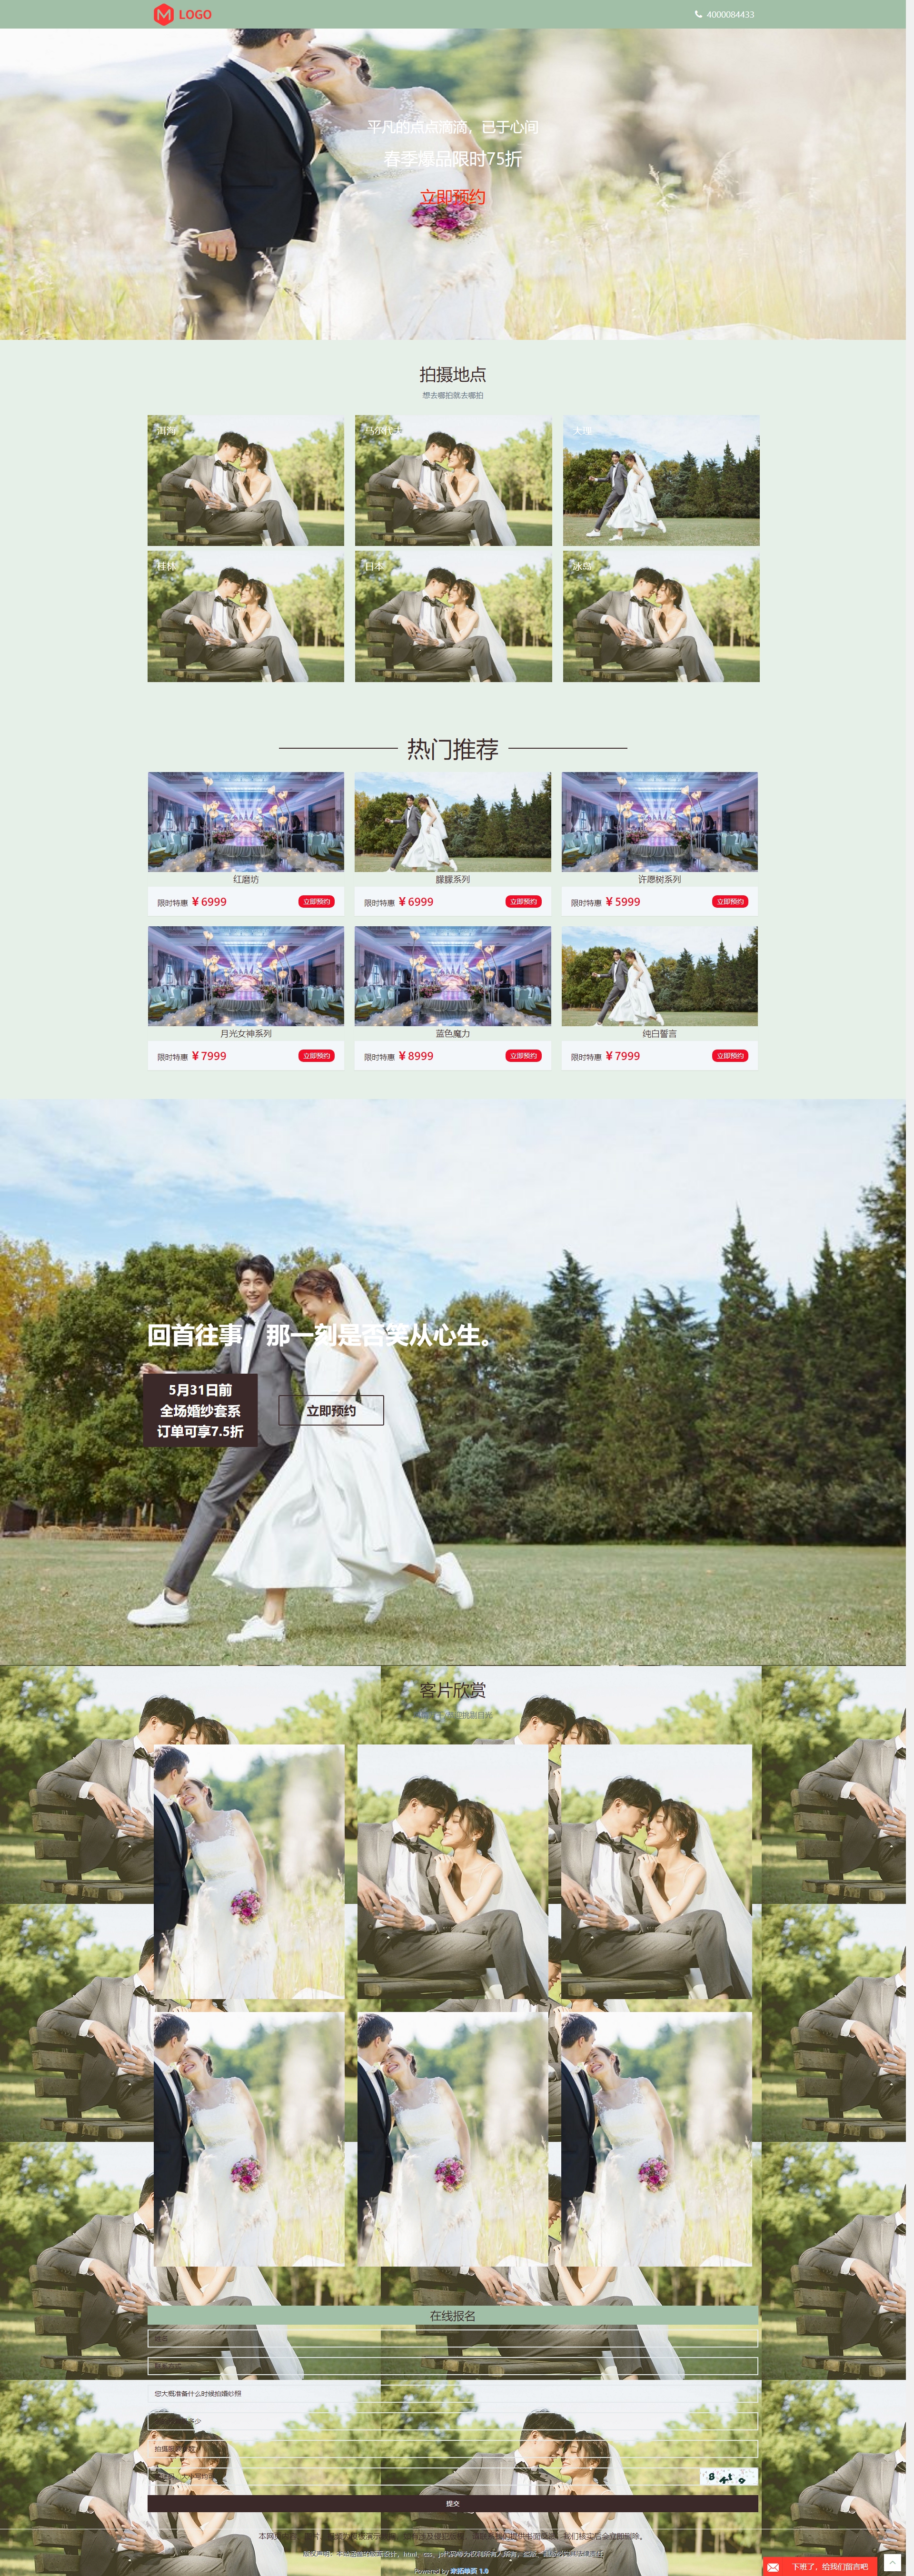 婚纱摄影落地页模板|广告页模板|宣传页模板|推广页|专题页设计制作